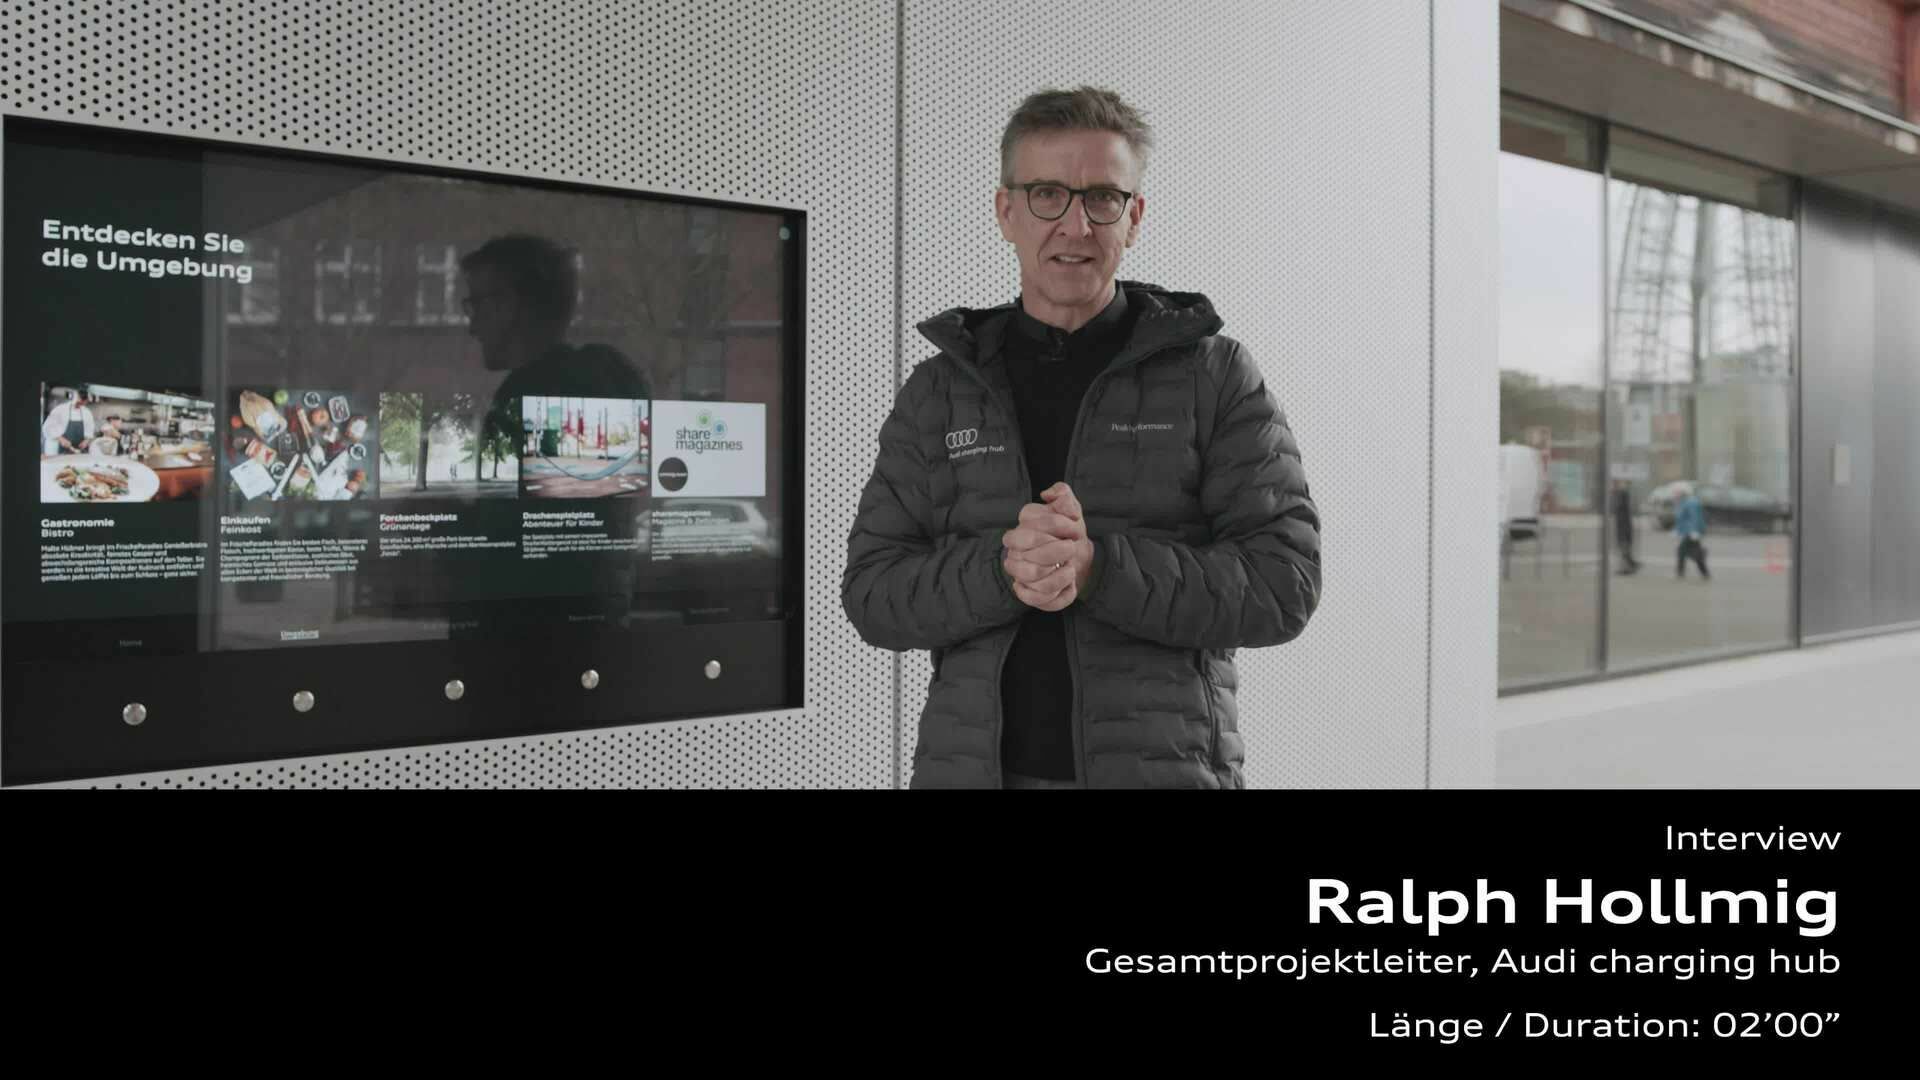 Footage: Statement von Ralph Hollmig zum Audi charging hub Berlin